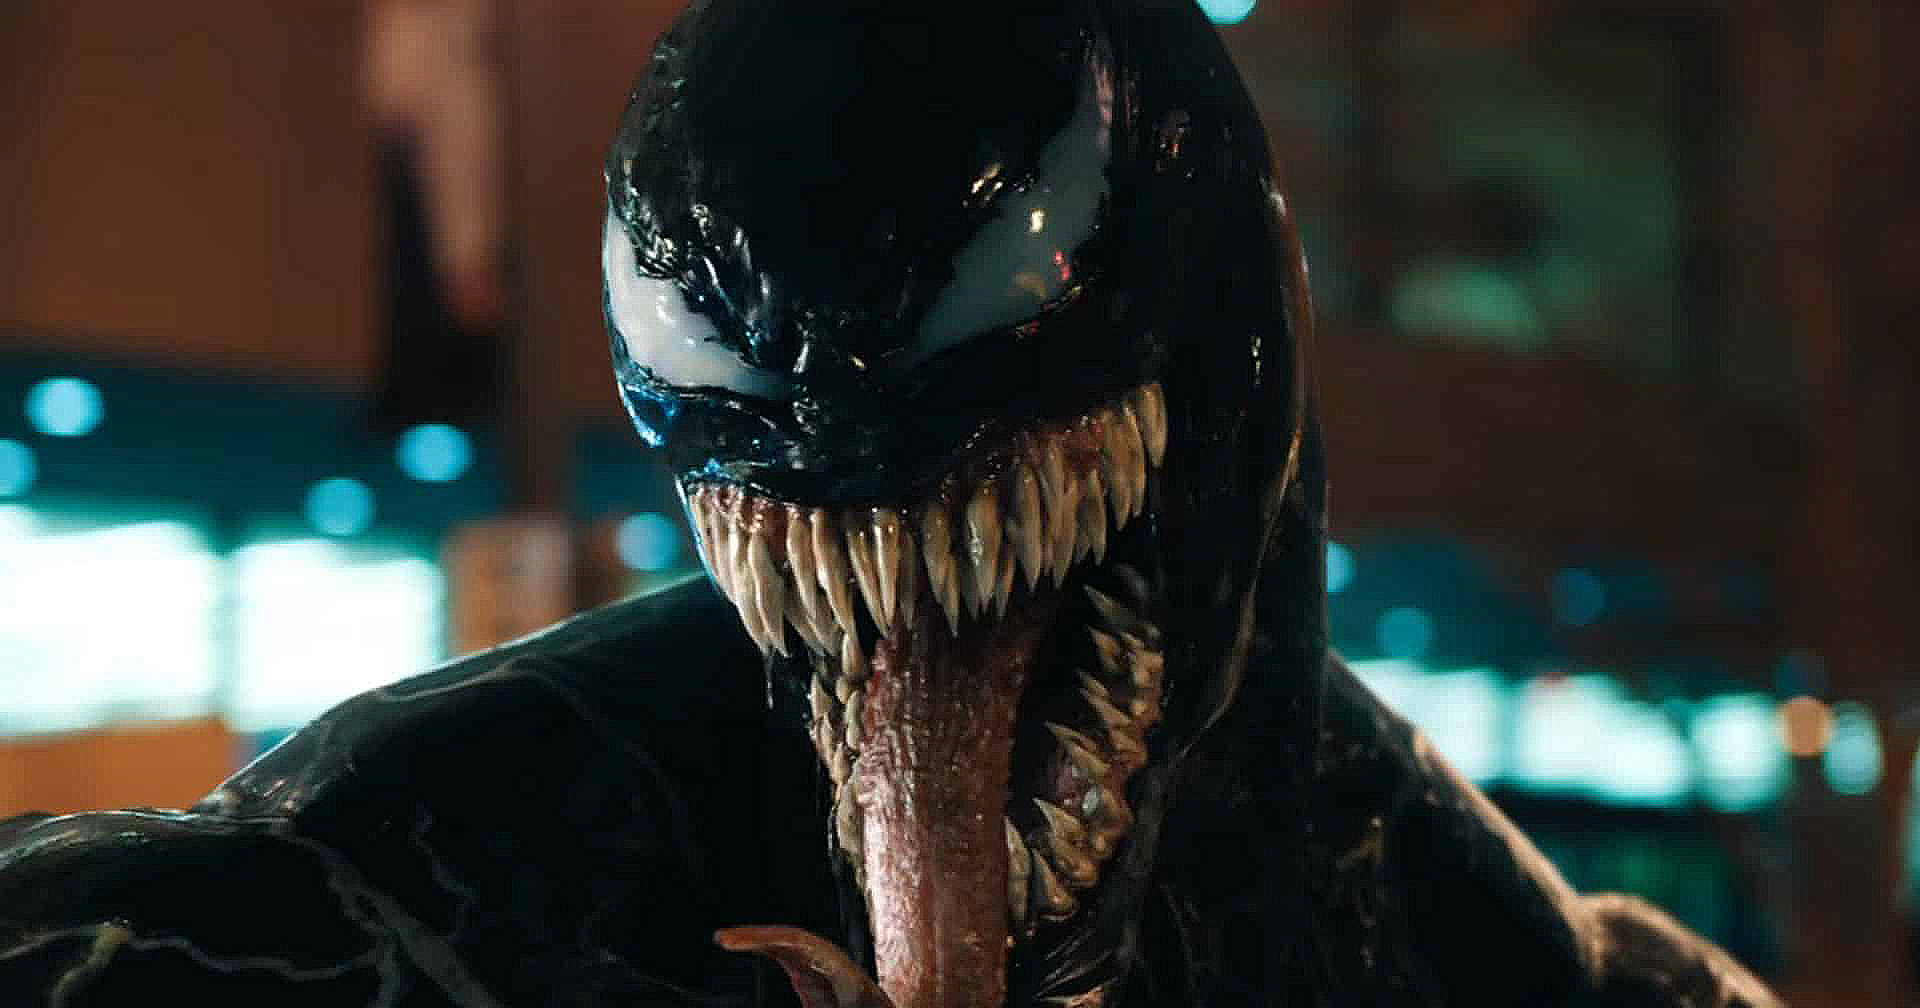 ชมเบื้องหลัง Venom 2 : ทอม ฮาร์ดี ในชุด ‘โมชันแคปเจอร์’ อุ่นเครื่องเตรียมรับบท Venom อีกครั้ง